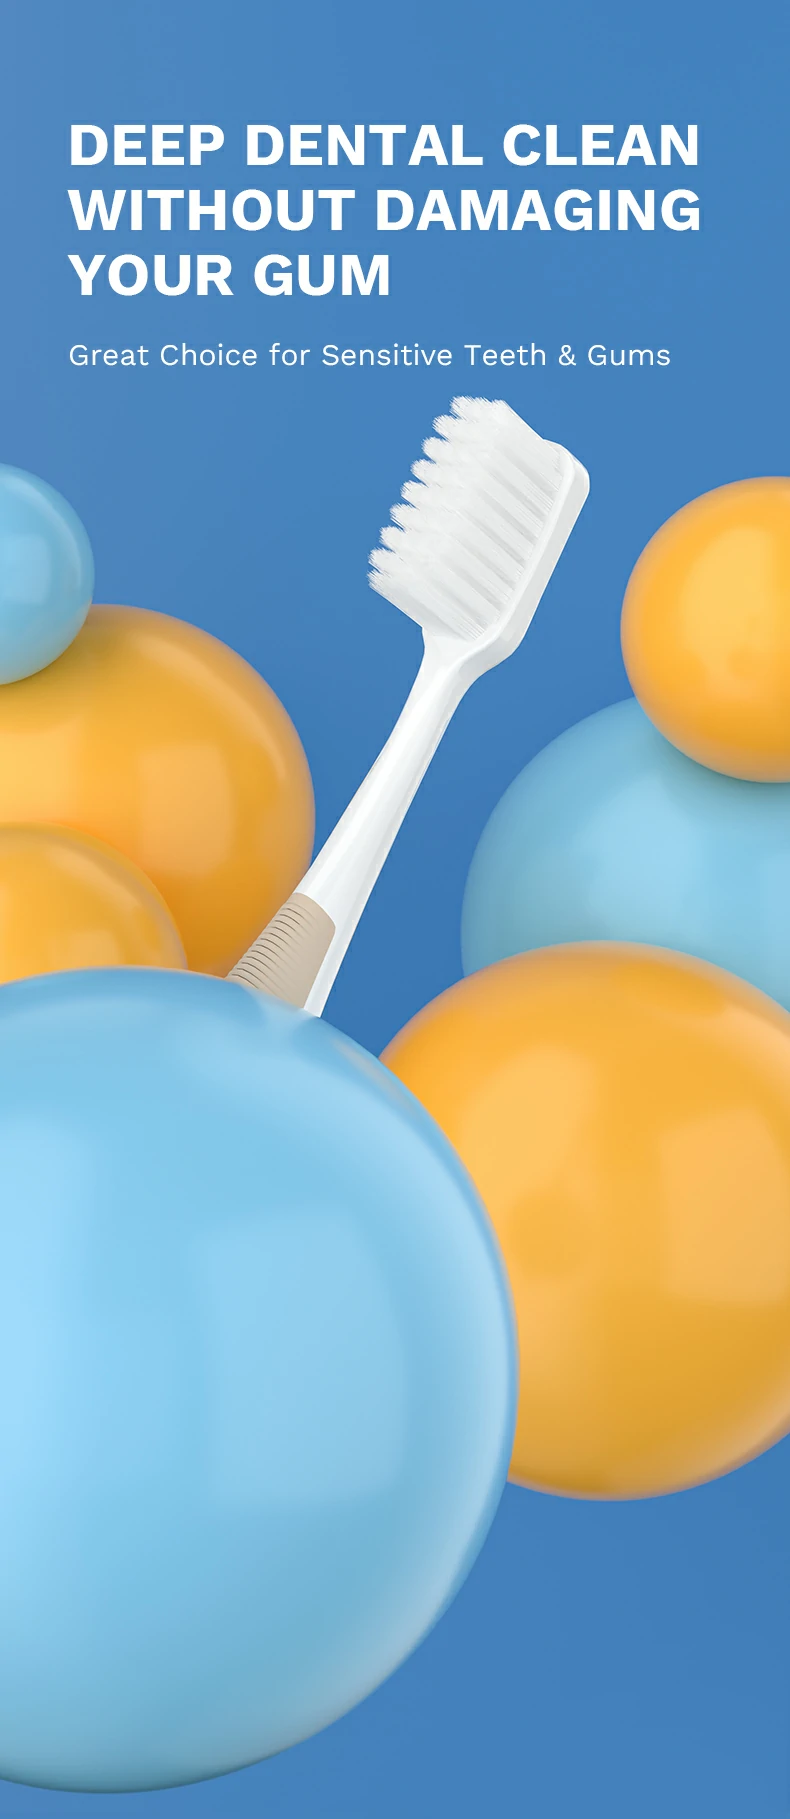 OralGos Gentle Clean Toothbrush (3)